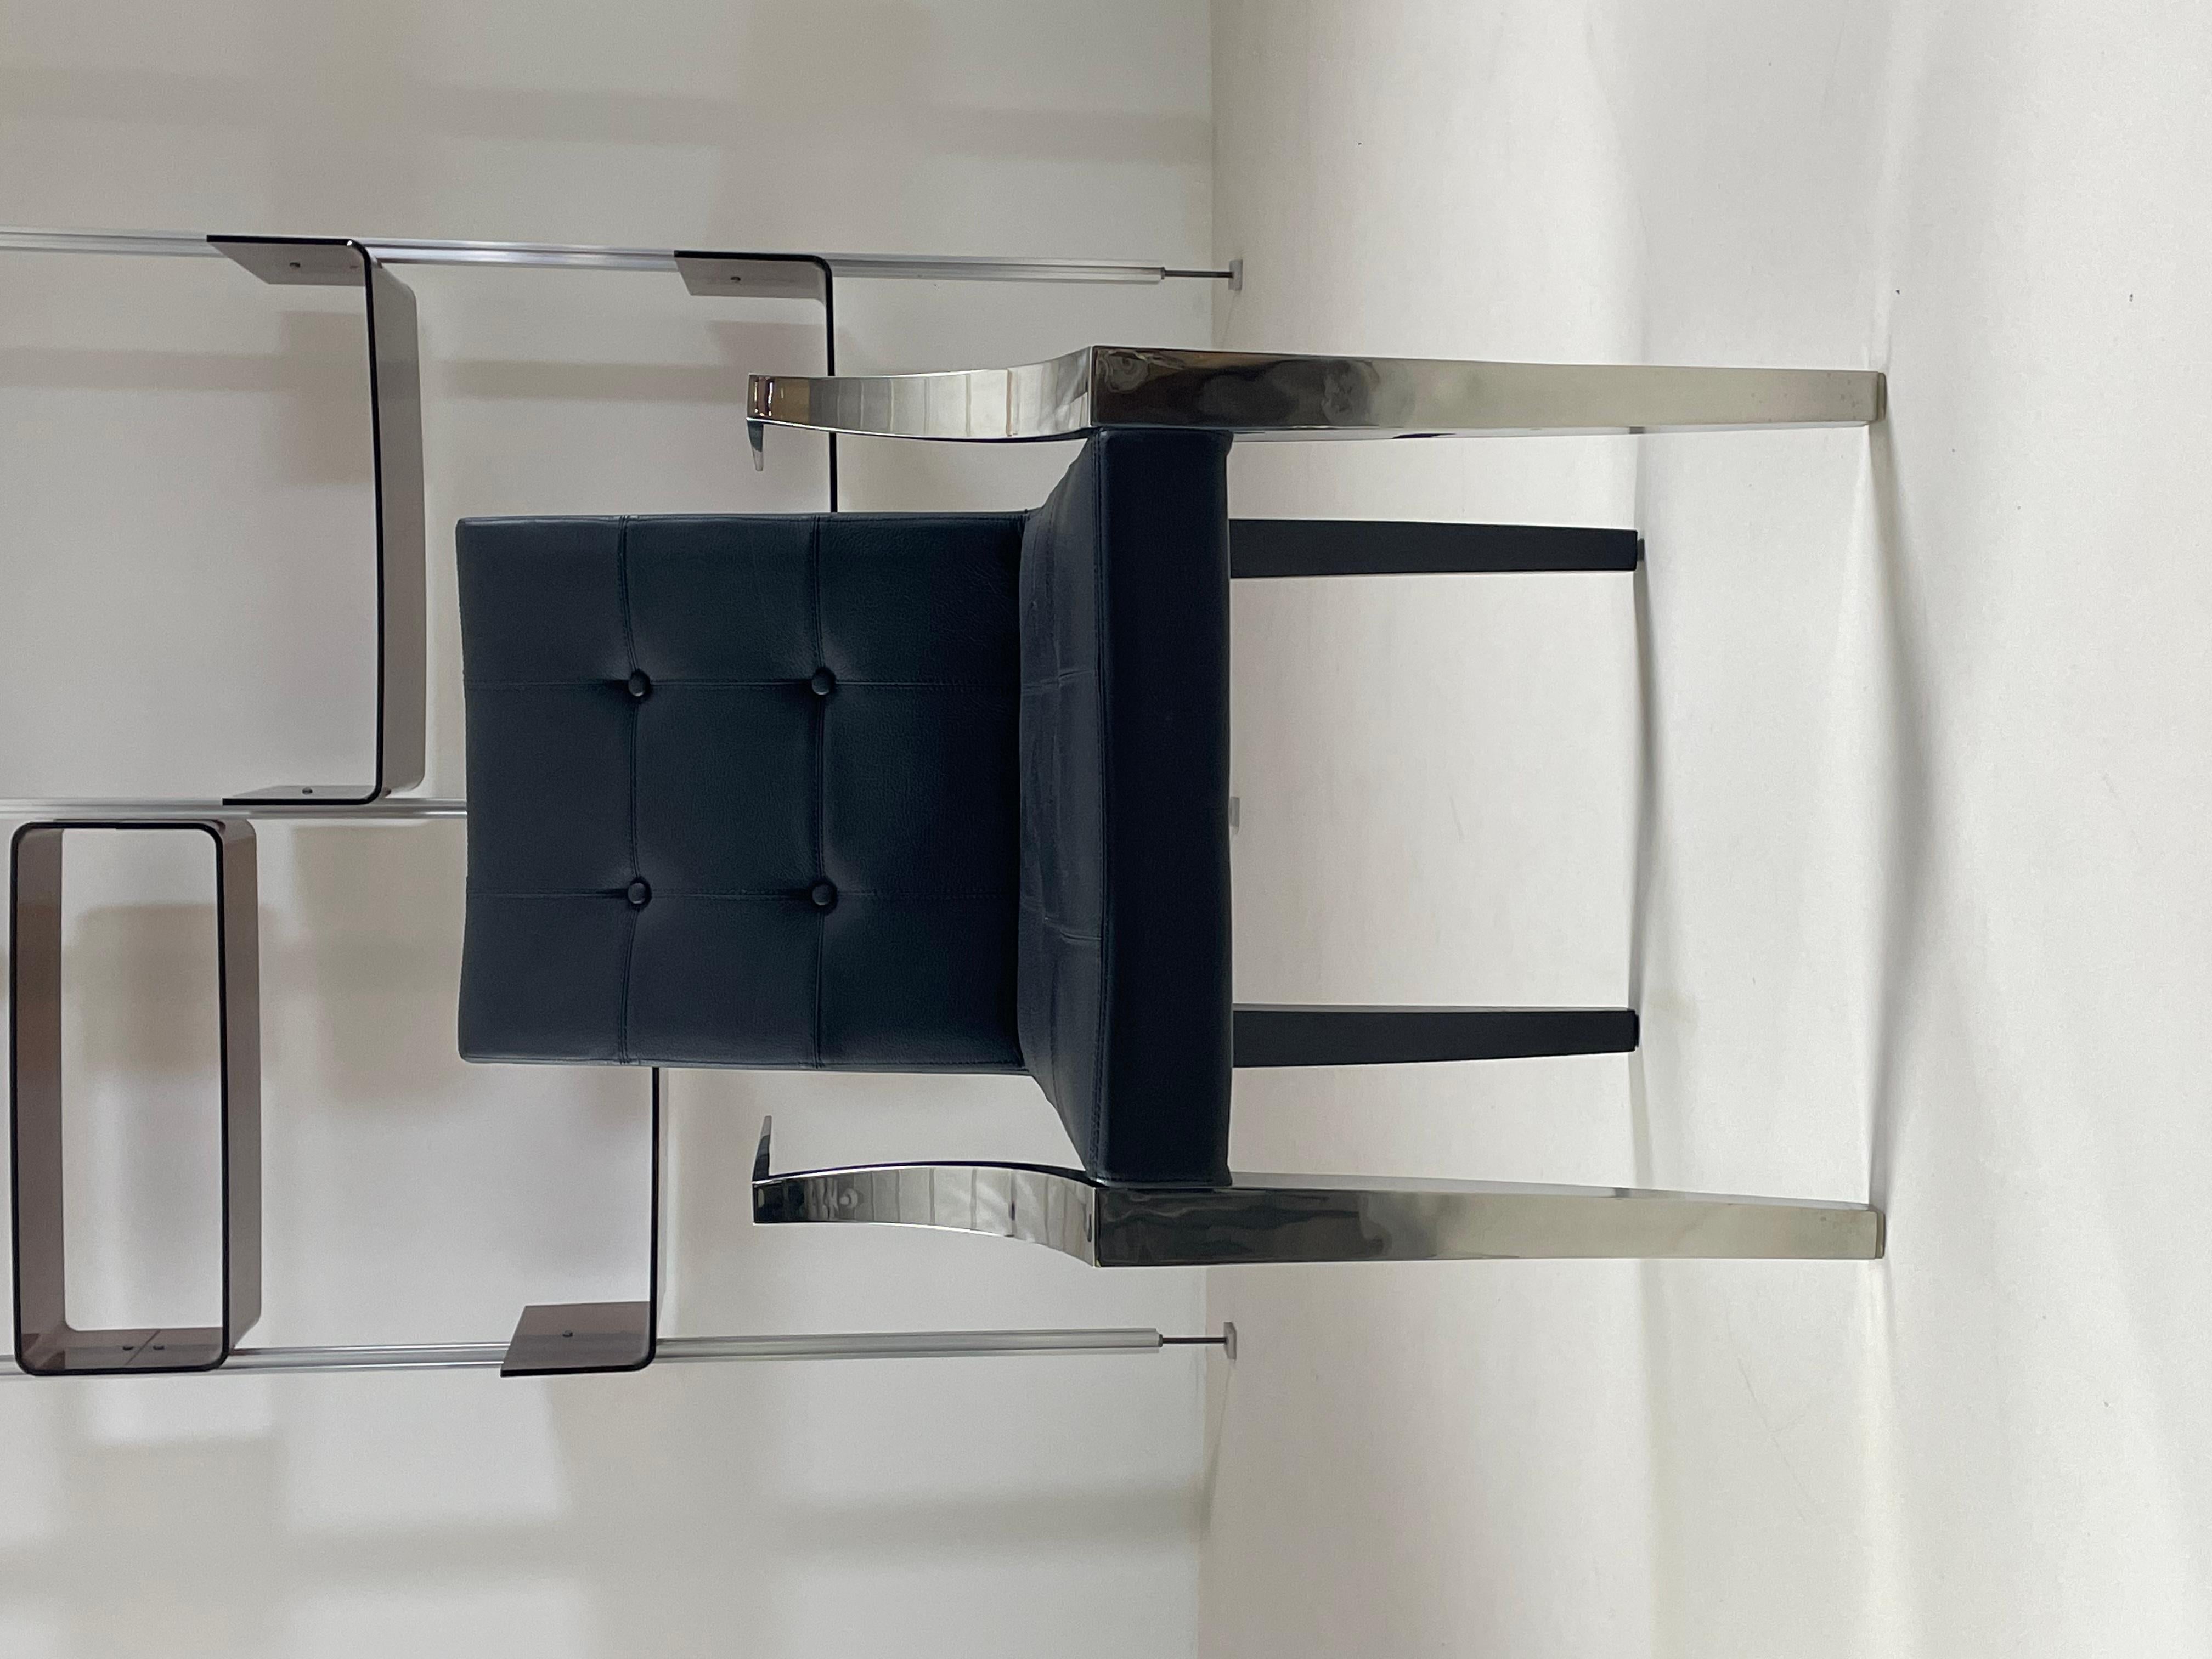 Fauteuil bridge Monseigneur par Philippe Starck et édité par Driade au début des années 2000. Ce fauteuil chic et raffiné a été conçu pour l’hôtel « le méridien » à Los Angeles. Le fauteuil allie des pieds et accoudoirs en inox et une assise en cuir